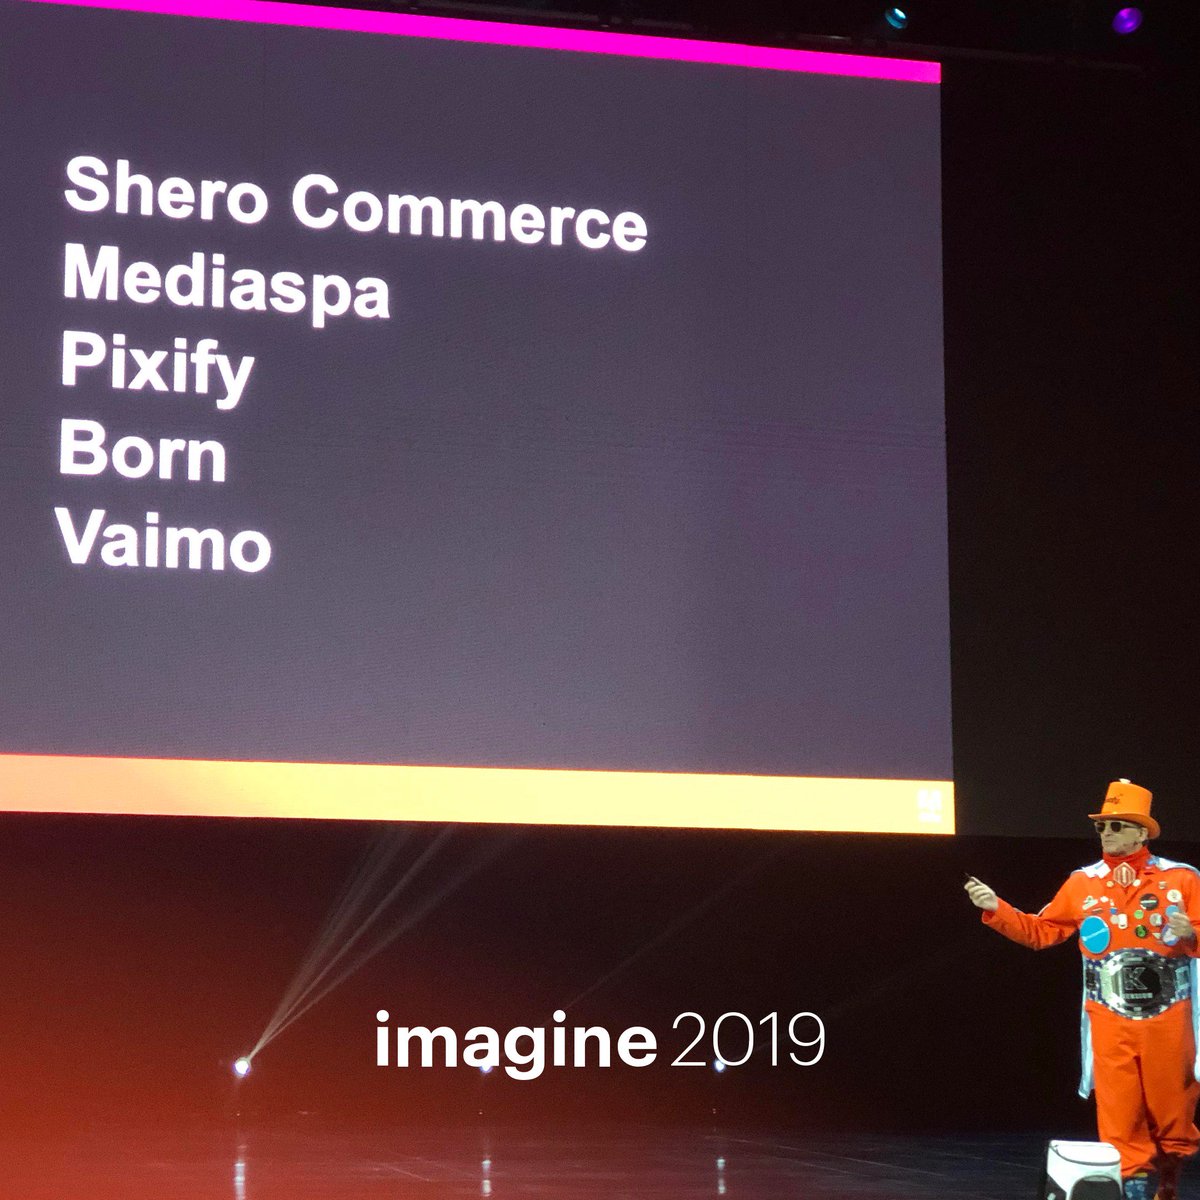 SheroCommerce: Shero Commerce: Proud sponsors of Imagine 2019!n#TeamShero #MagentoImagine https://t.co/FPy0jrFmUf